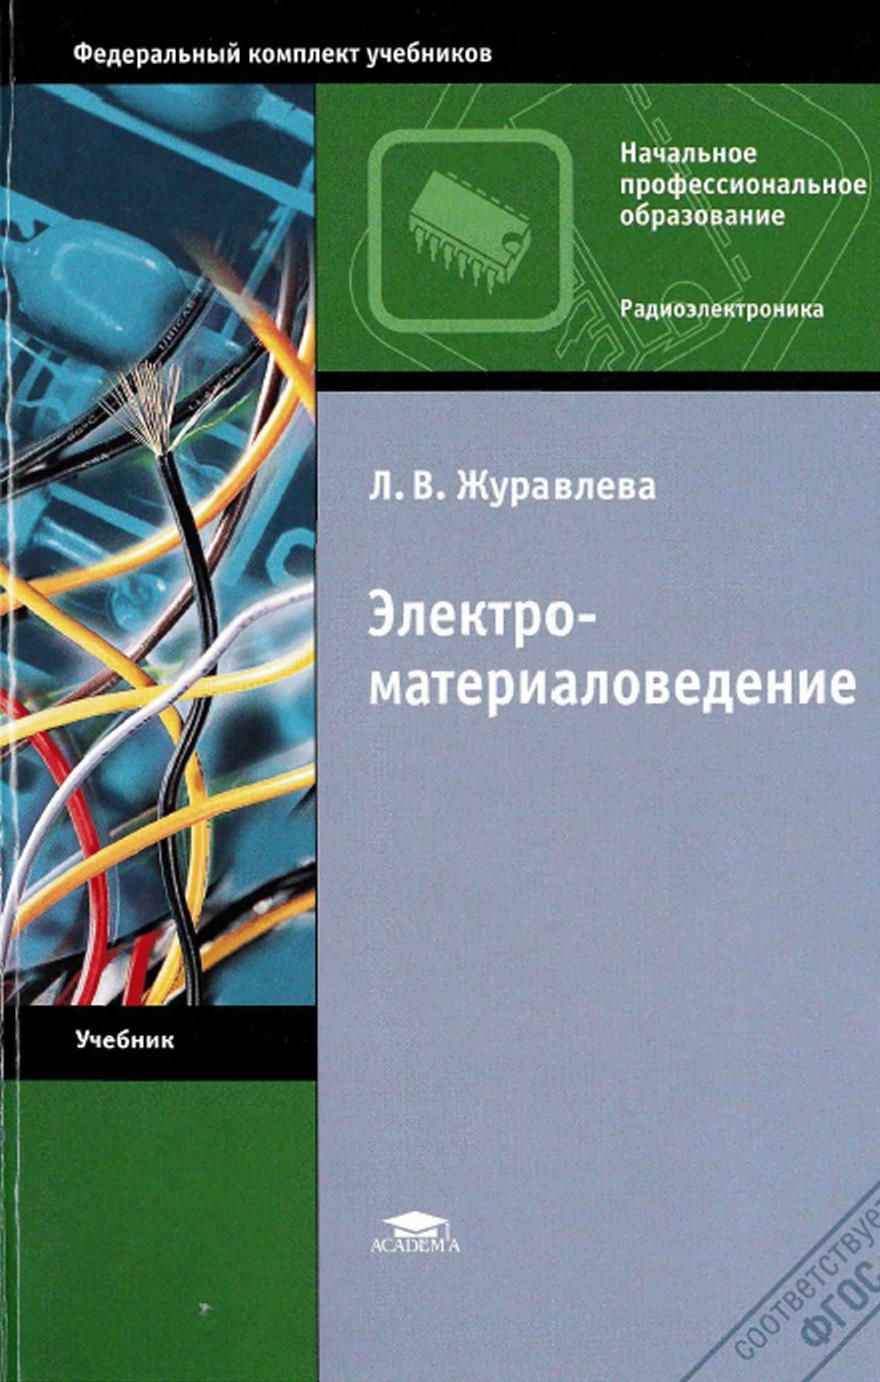 Электроматериаловедение, Журавлева Л.В., 2013